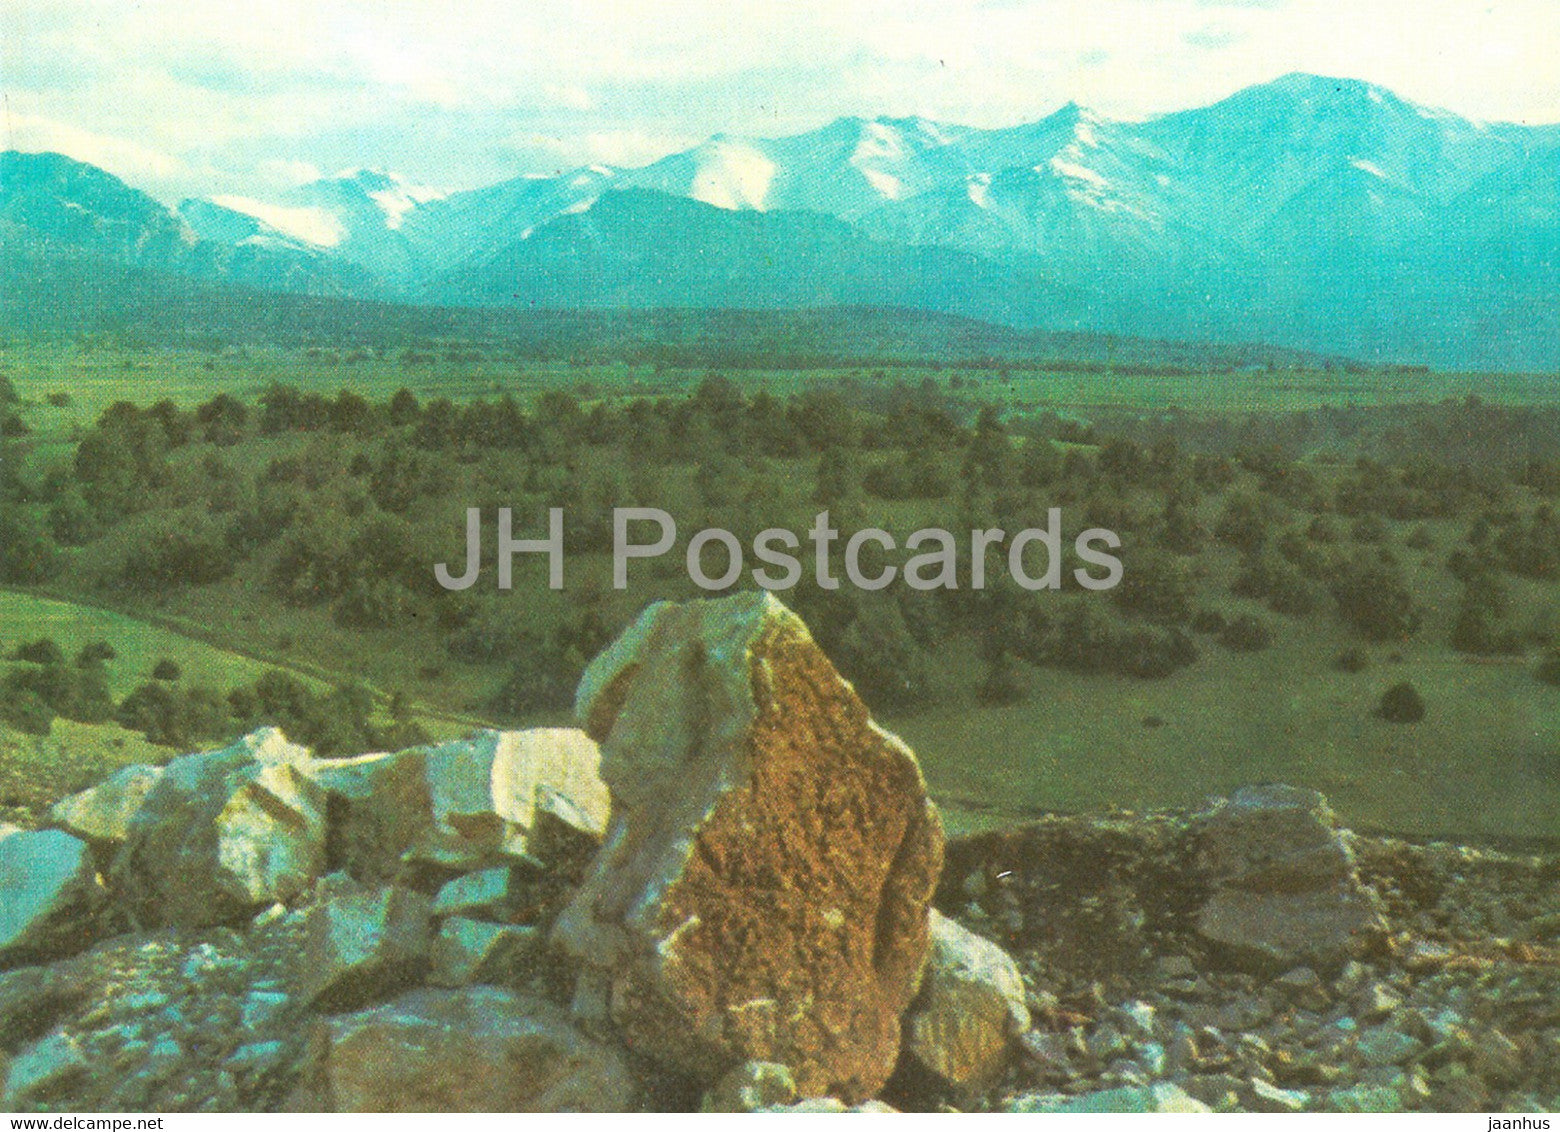 panorama of the peaks of the Turkestan ridge - Nature Trails - 1981 - Uzbekistan USSR - unused - JH Postcards